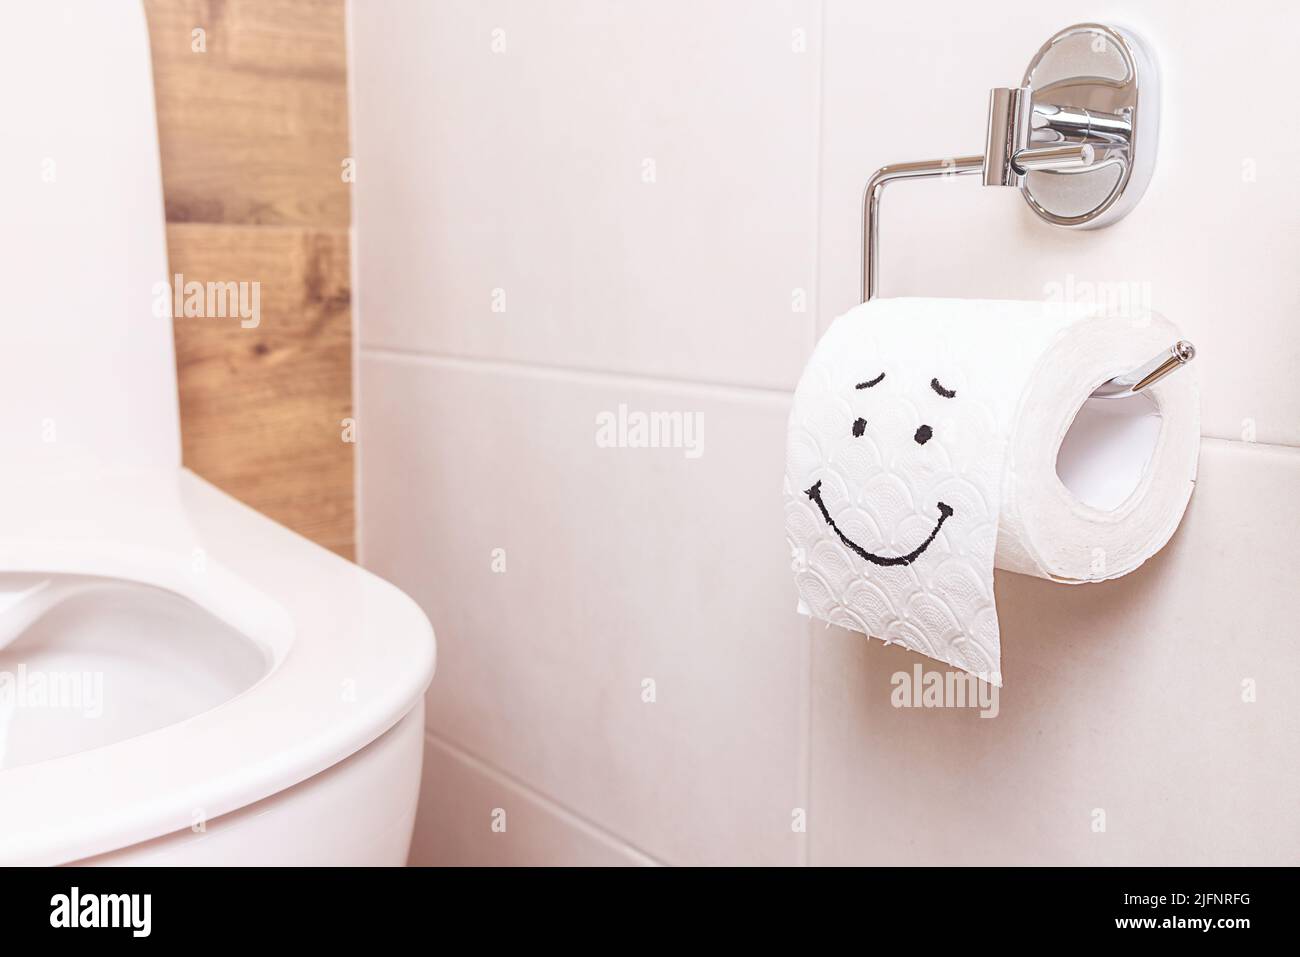 Eine Rolle Toilettenpapier mit einem fröhlichen Gesicht hing an einer  weißen Wand im Badezimmer Stockfotografie - Alamy